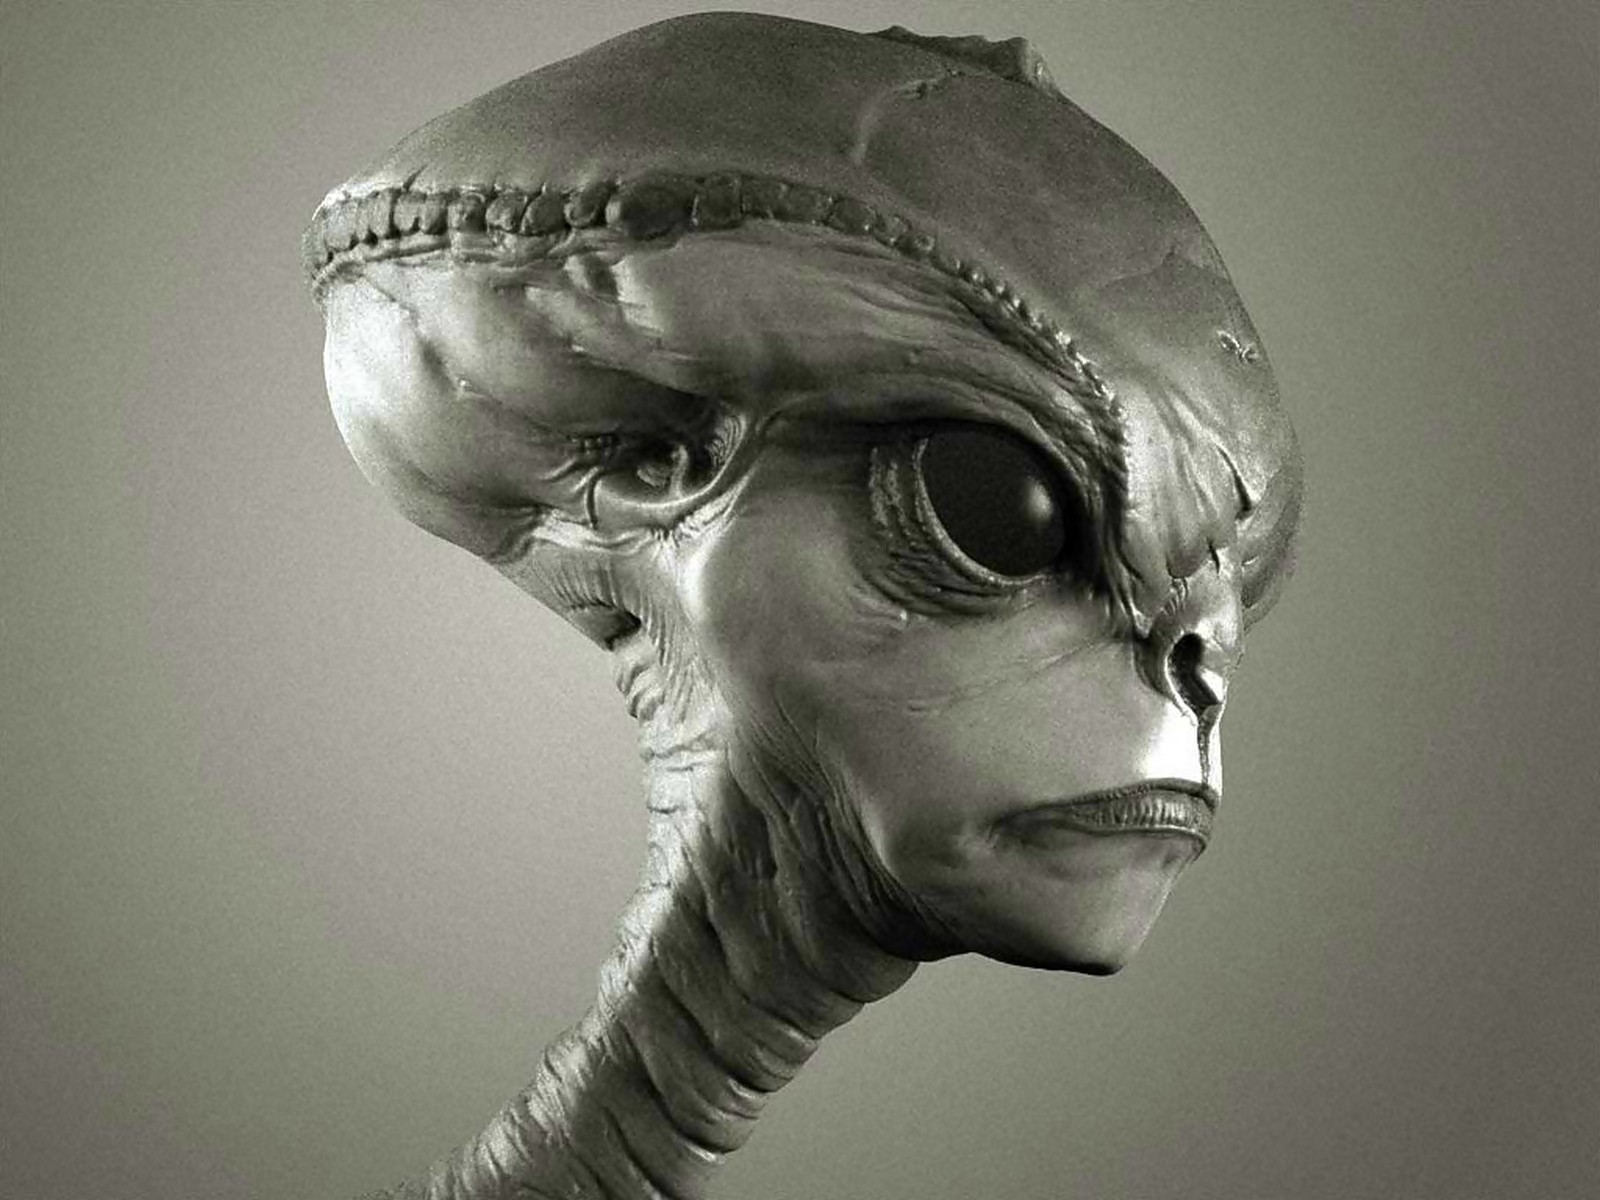 Sci-fi alien desktop wallpaper.